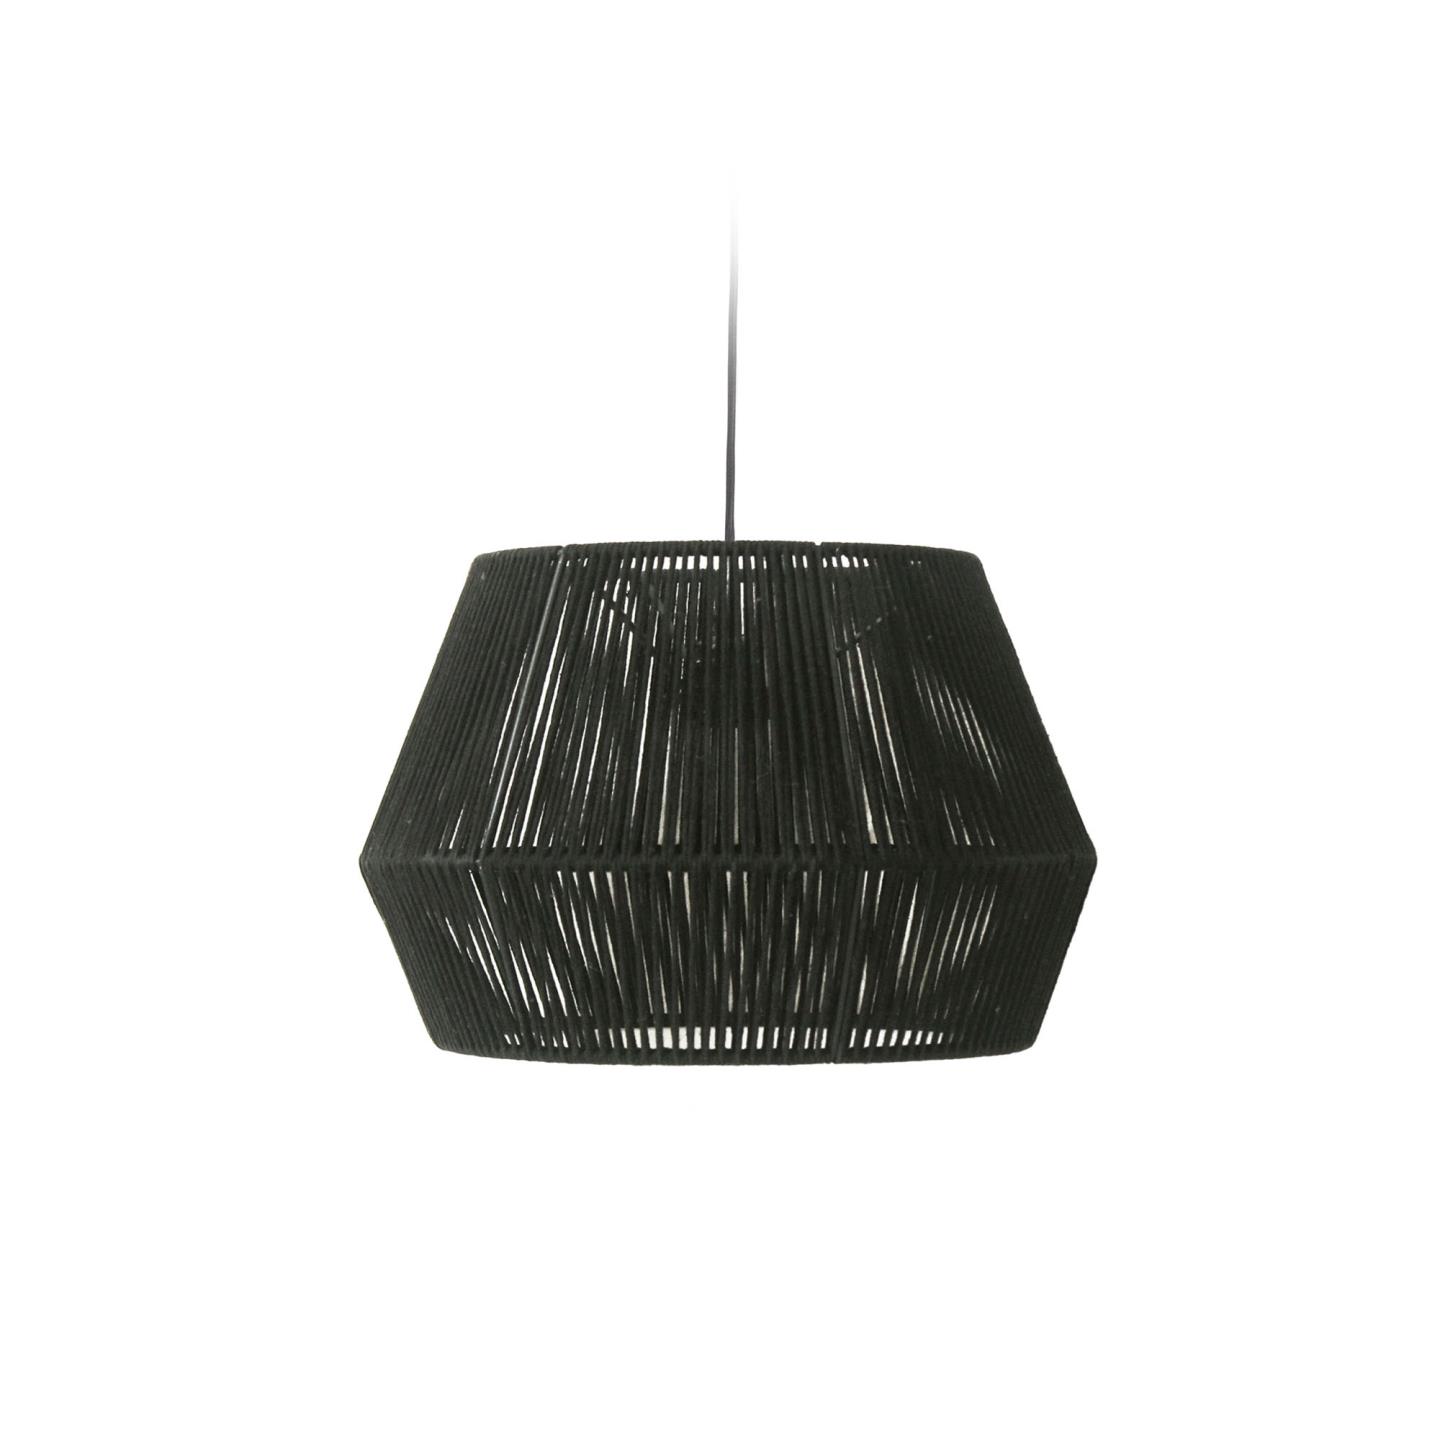 LAFORMA Cantia loftslampe, rund - sort bomuld og jern (Ø36,5)